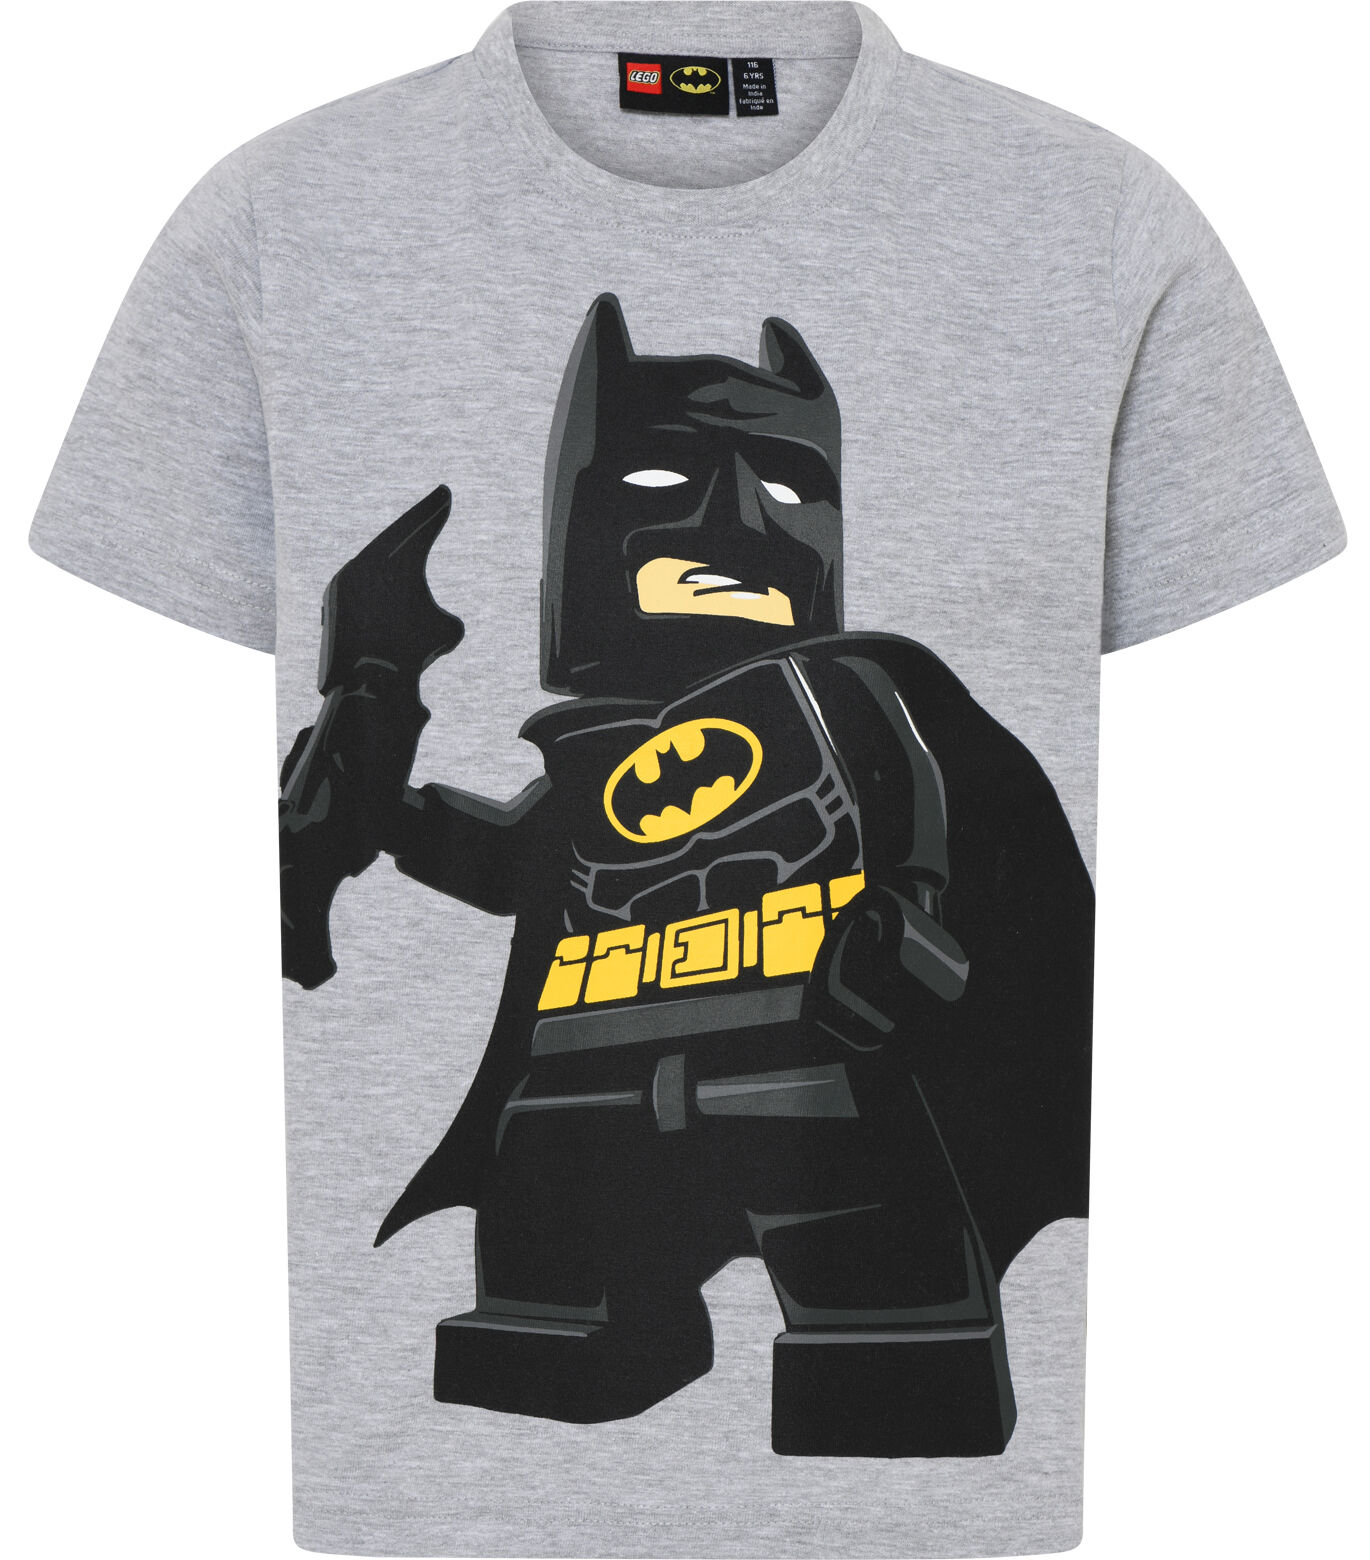 LEGO kidswear Lego Wear T-shirt Grey Melange 122